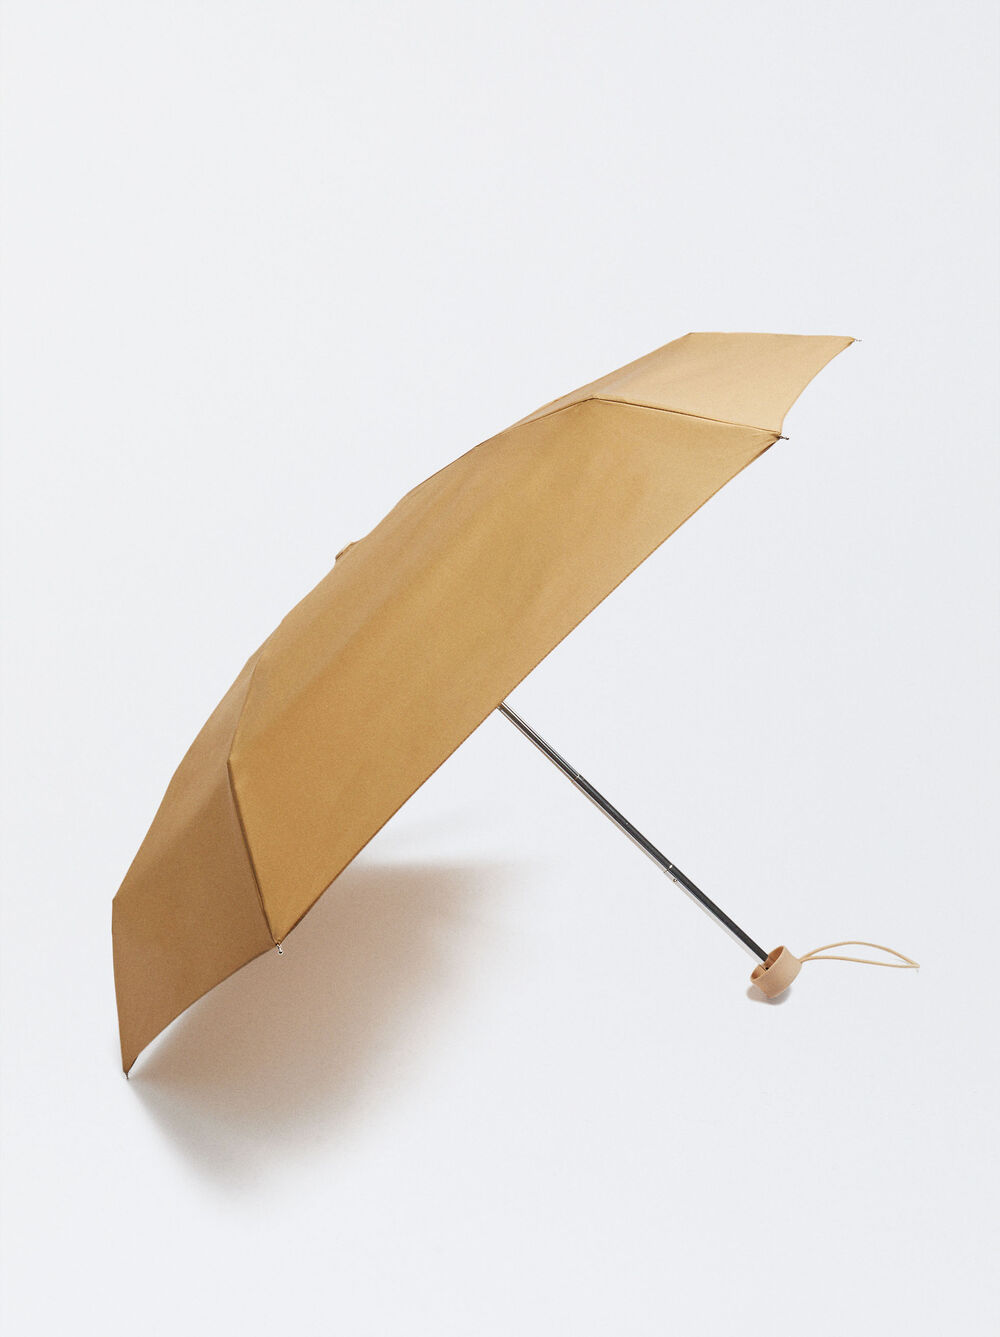 Small Umbrella